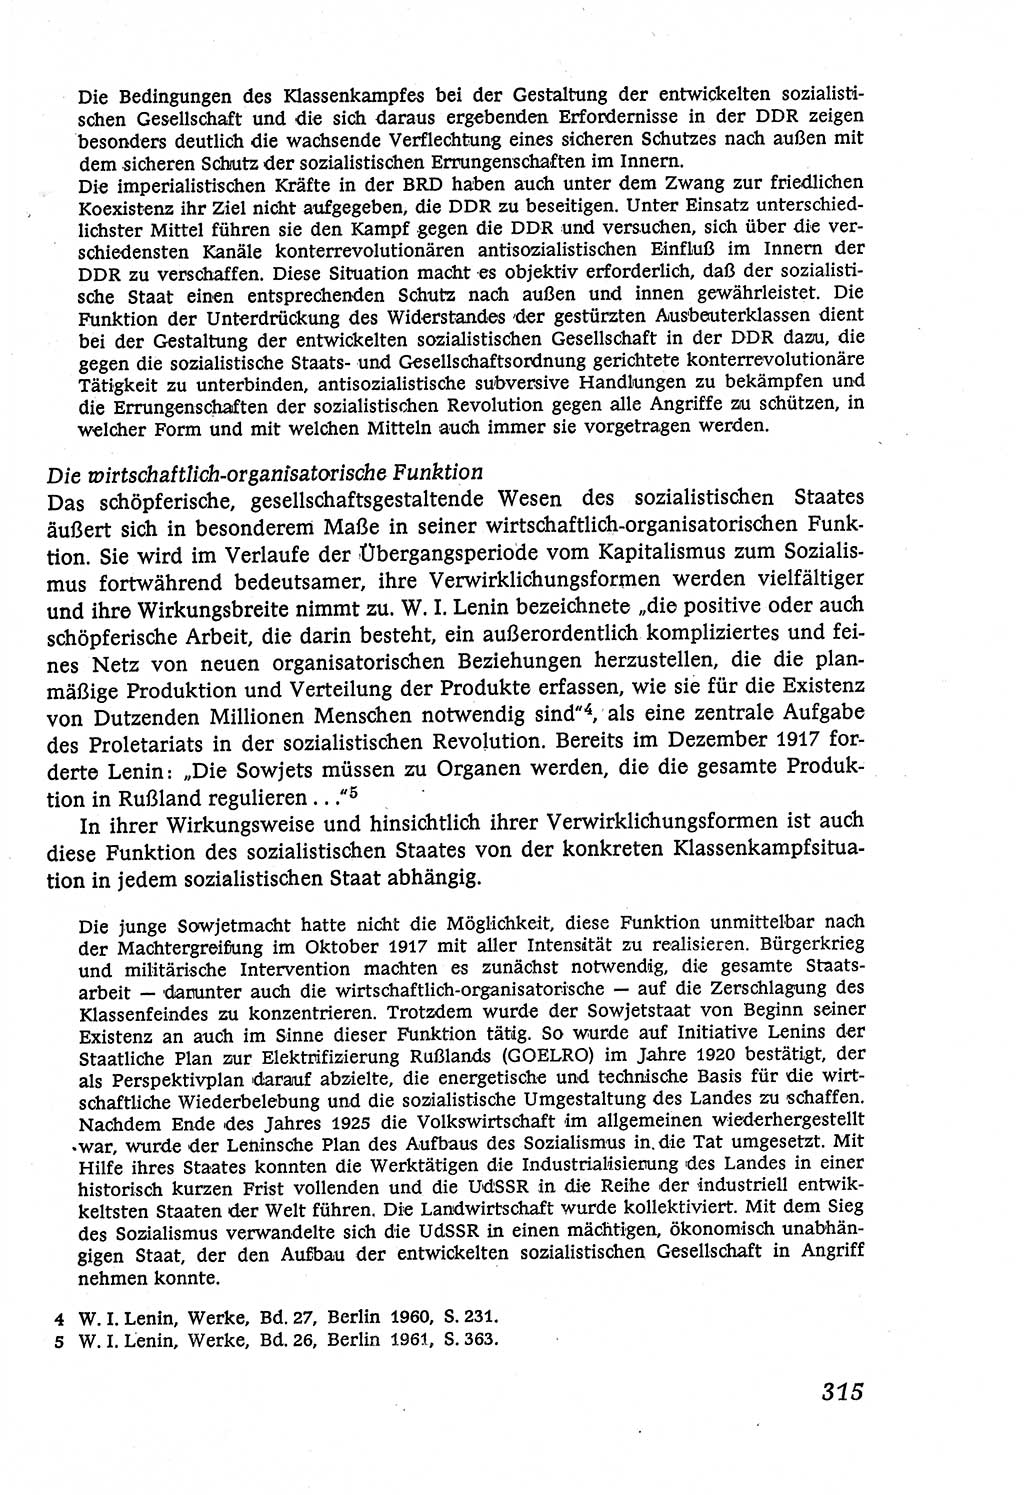 Marxistisch-leninistische (ML) Staats- und Rechtstheorie [Deutsche Demokratische Republik (DDR)], Lehrbuch 1980, Seite 315 (ML St.-R.-Th. DDR Lb. 1980, S. 315)